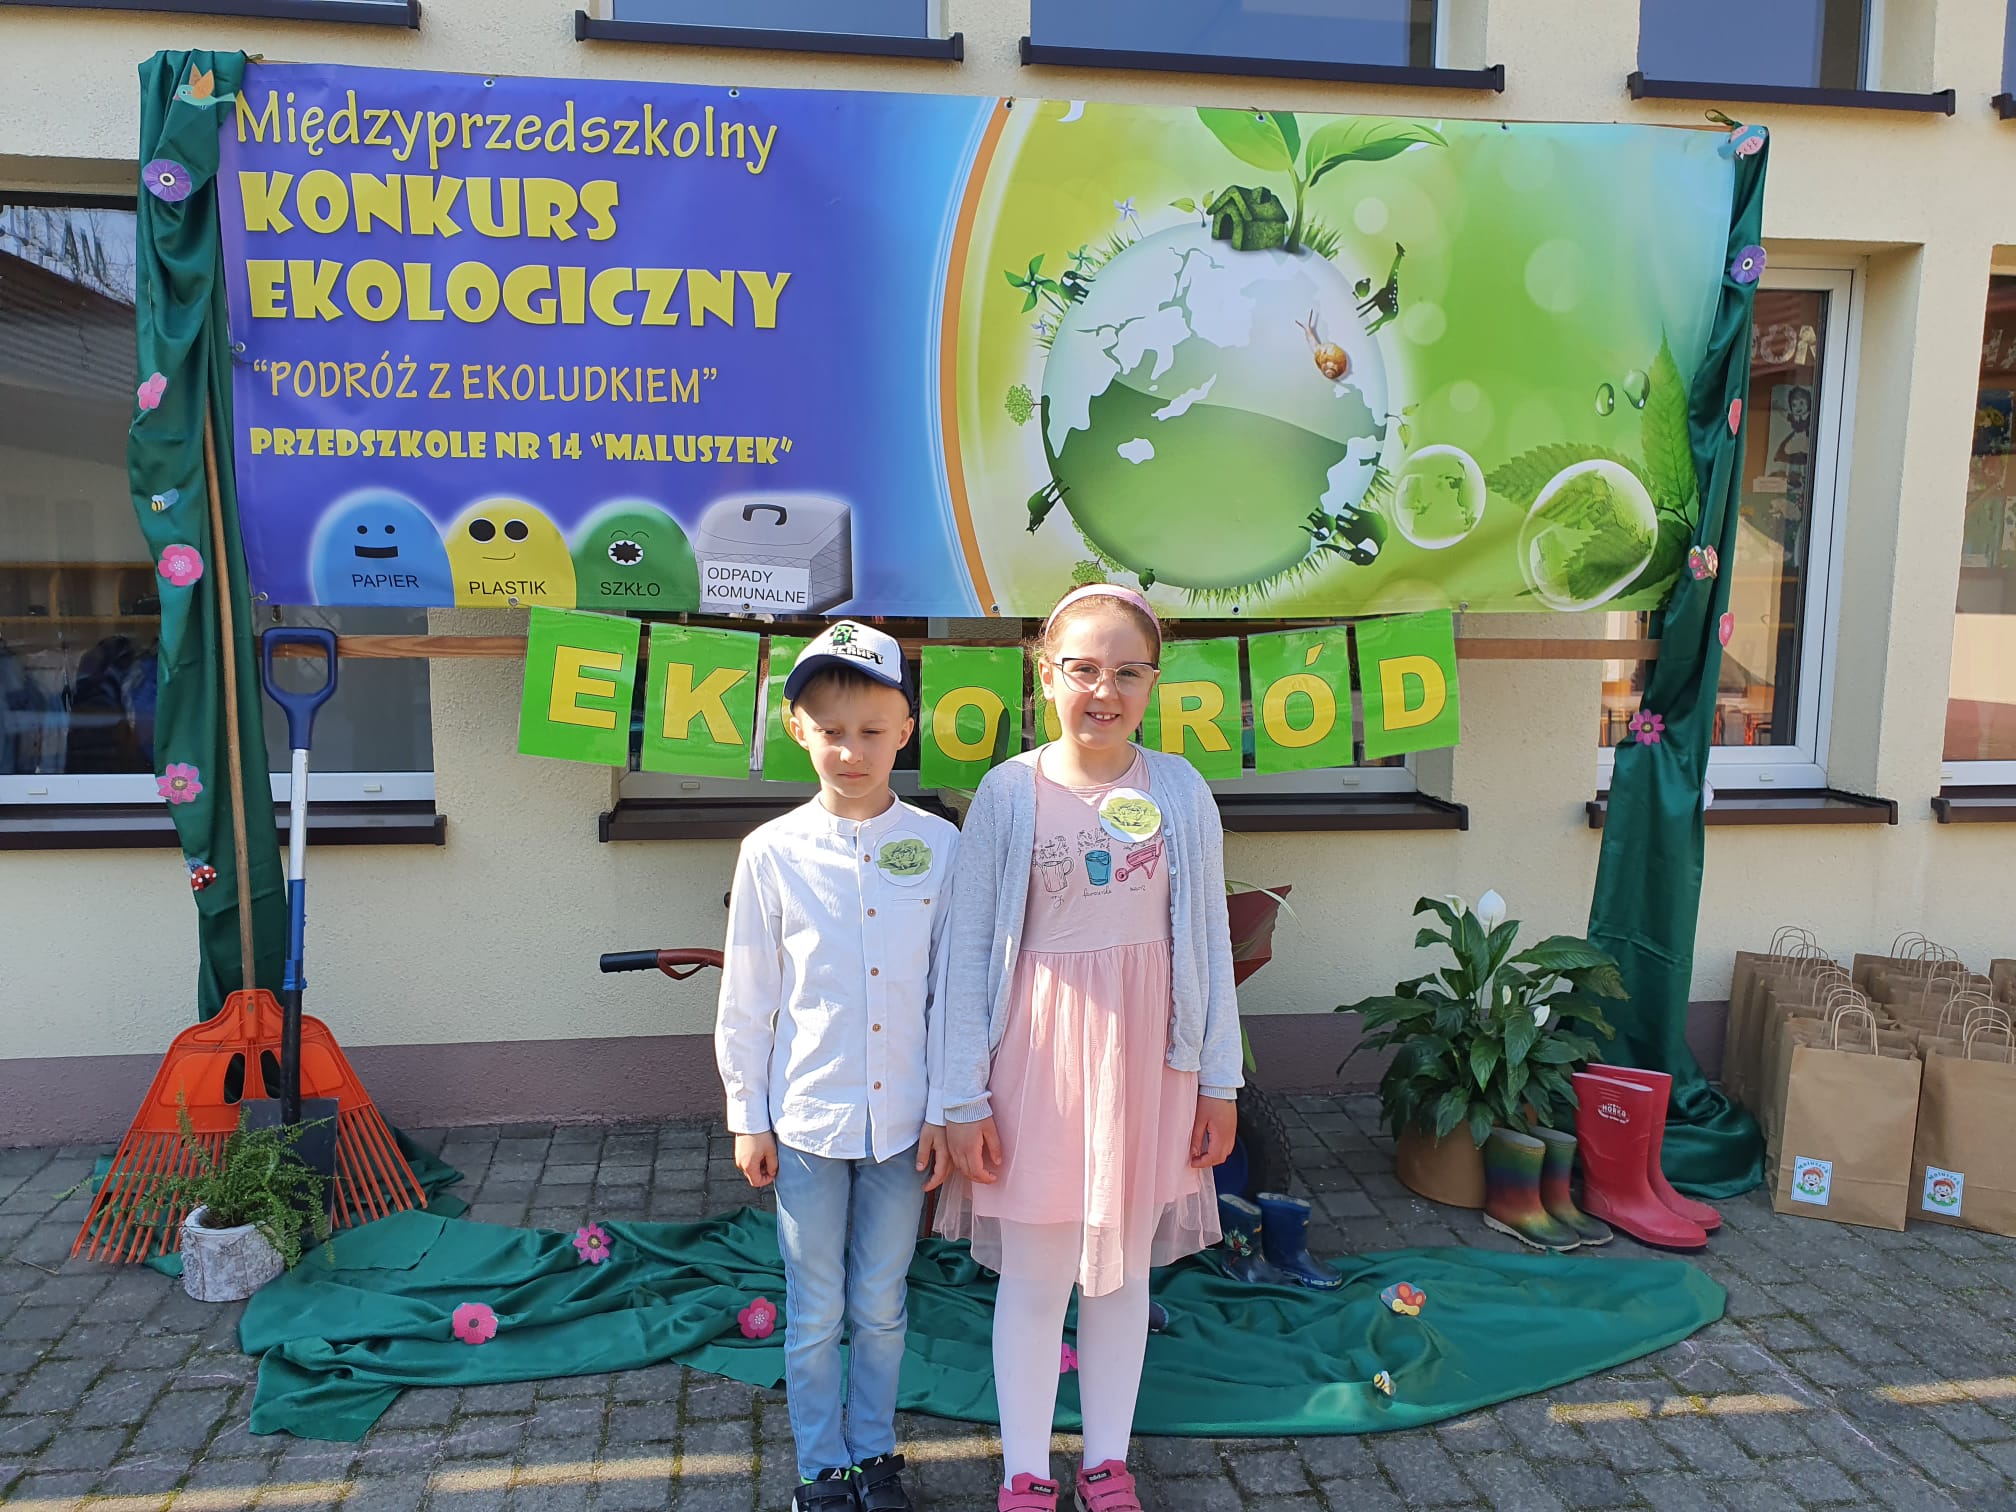 Dziewczynka i chłopiec stoją przed przedszkolem na tle plakatu , promującego konkurs.